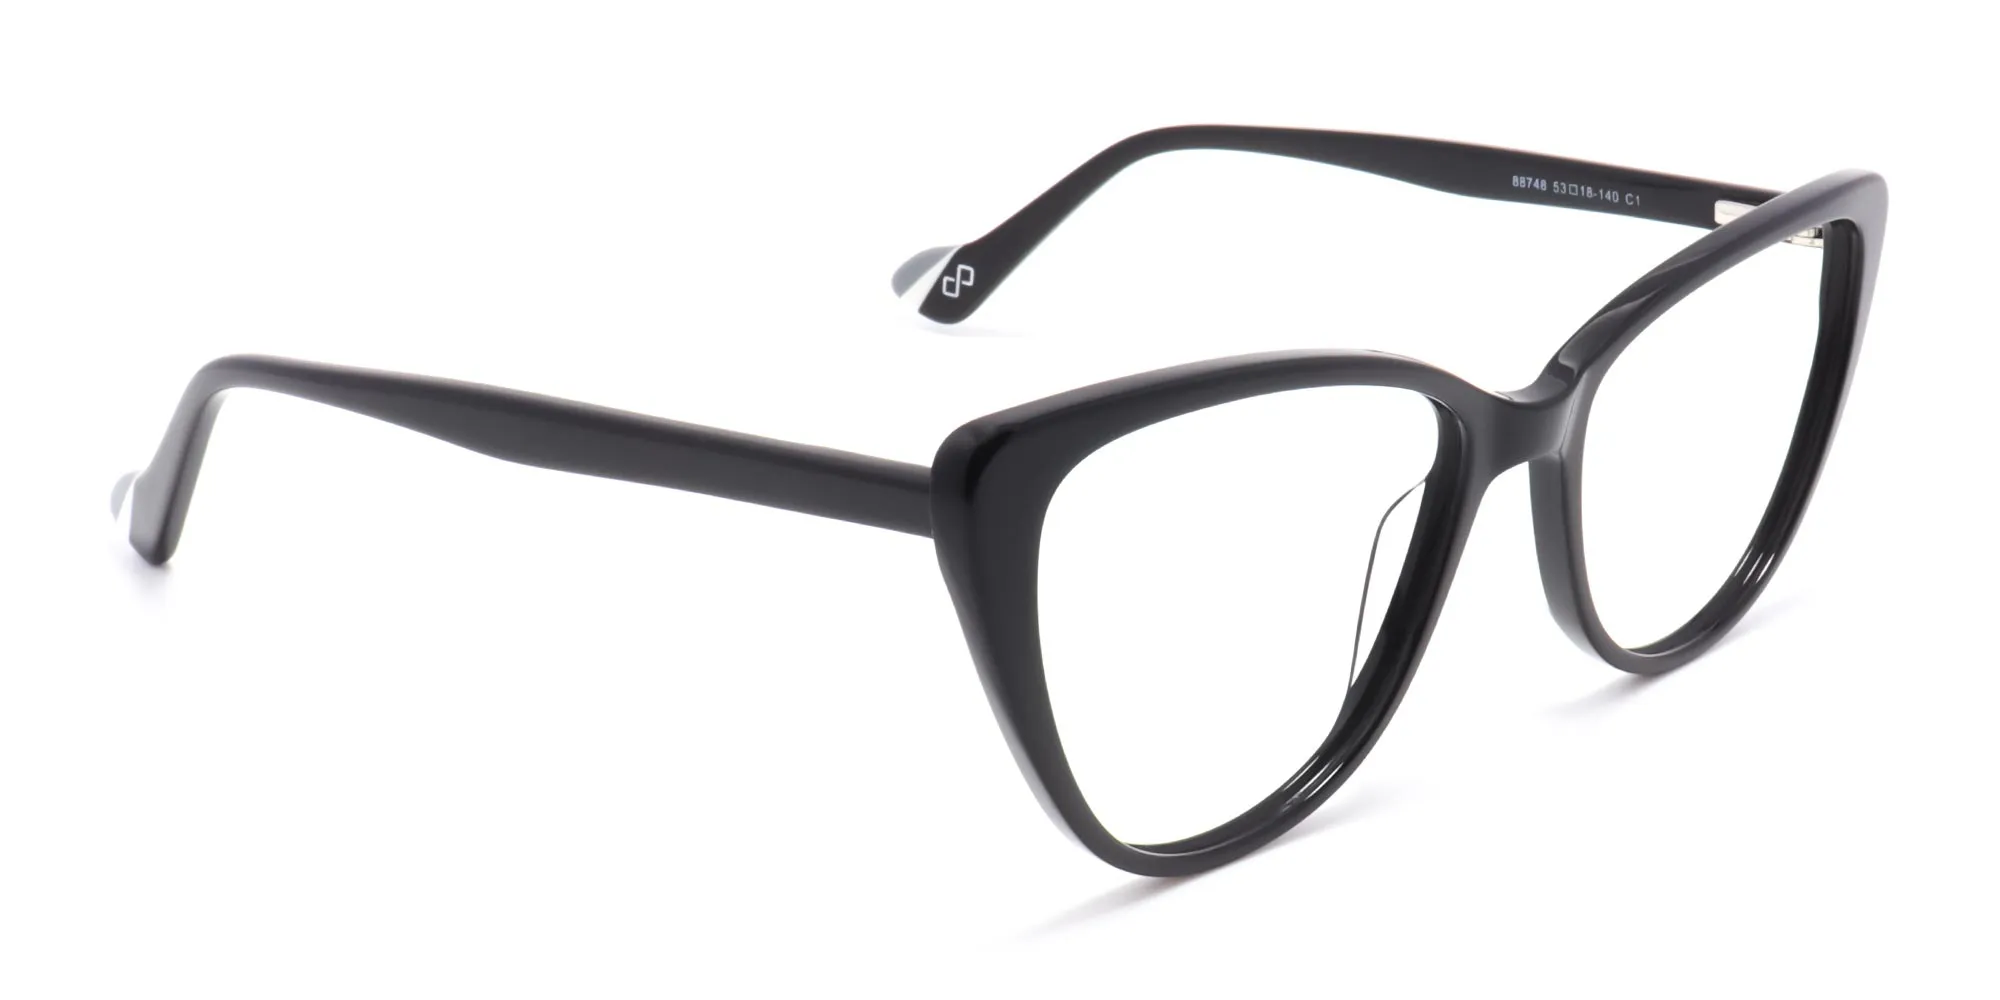 Black Cat Eye Glasses Frames-2